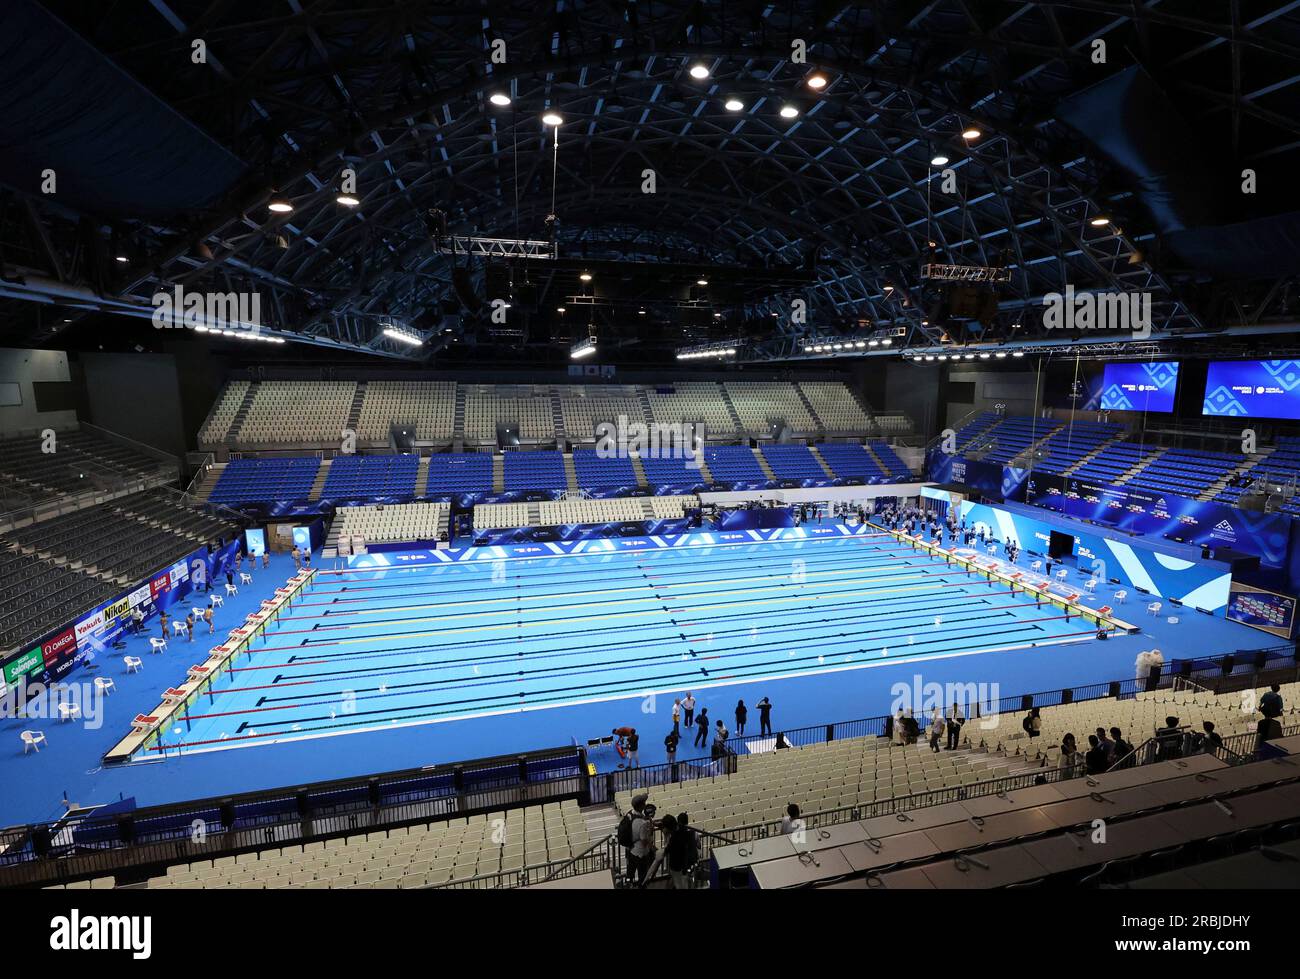 Venue – World Aquatics Swimming World Cup